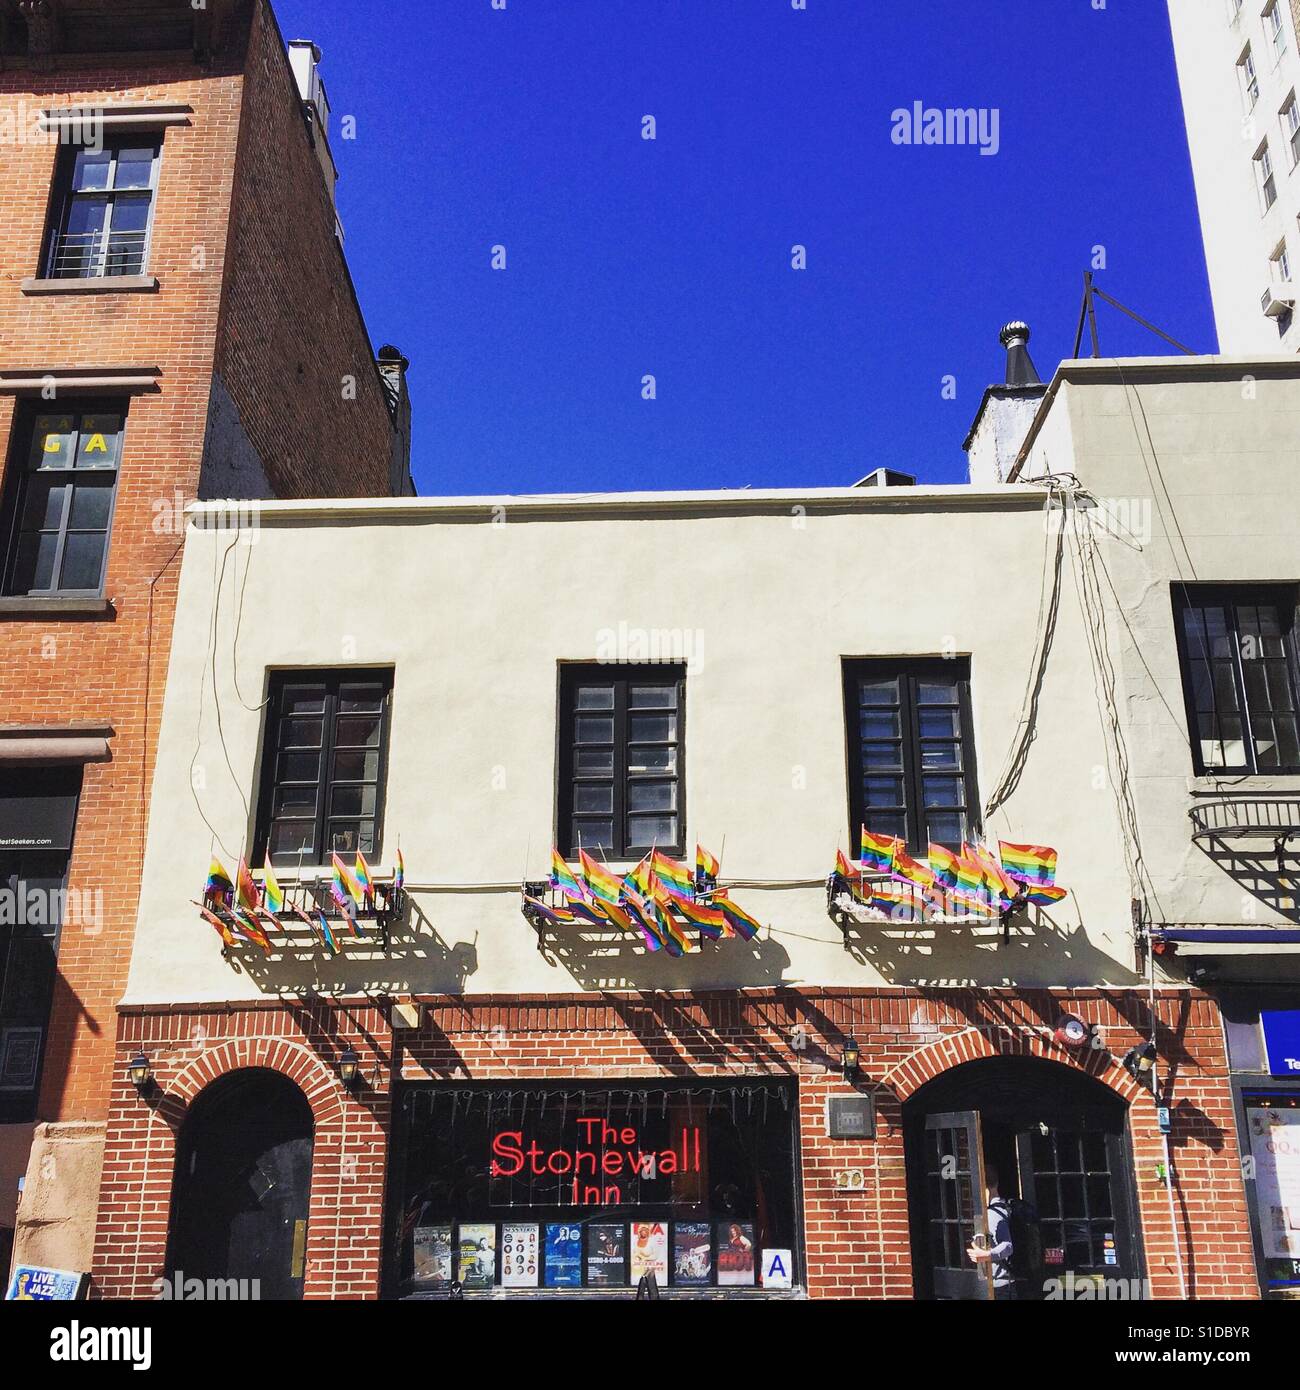 El Stonewall Inn, el sitio de los disturbios de Stonewall en 1969, un acontecimiento fundamental en la lucha por los derechos de LGBT. Greenwich Village, Nueva York. Foto de stock